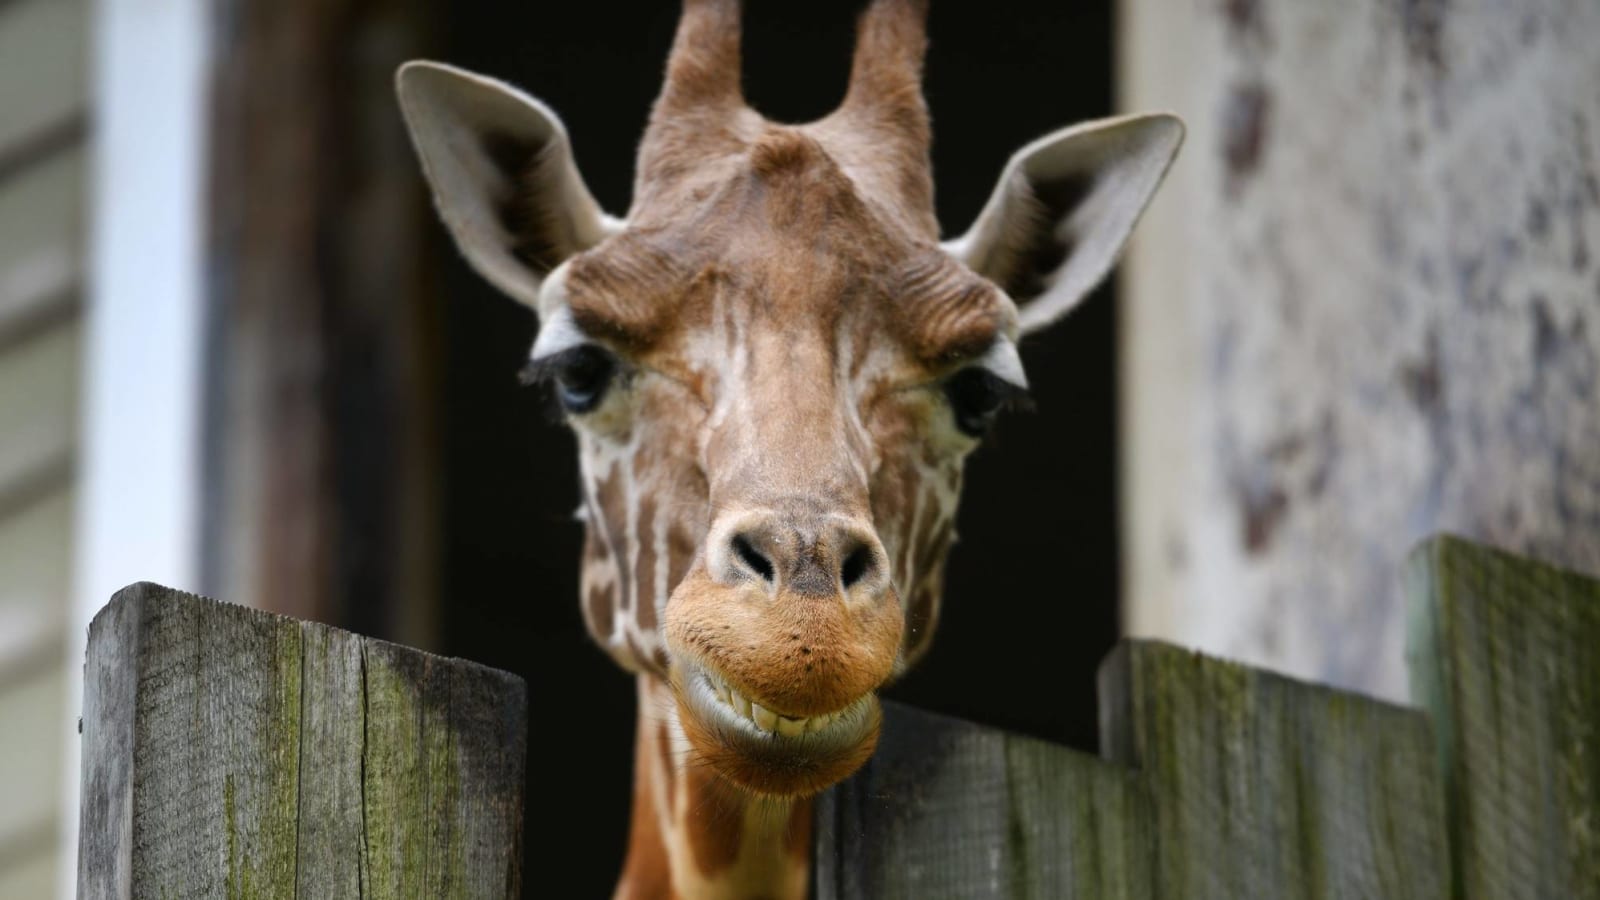 Giraffe named after Joe Burrow dies following illness